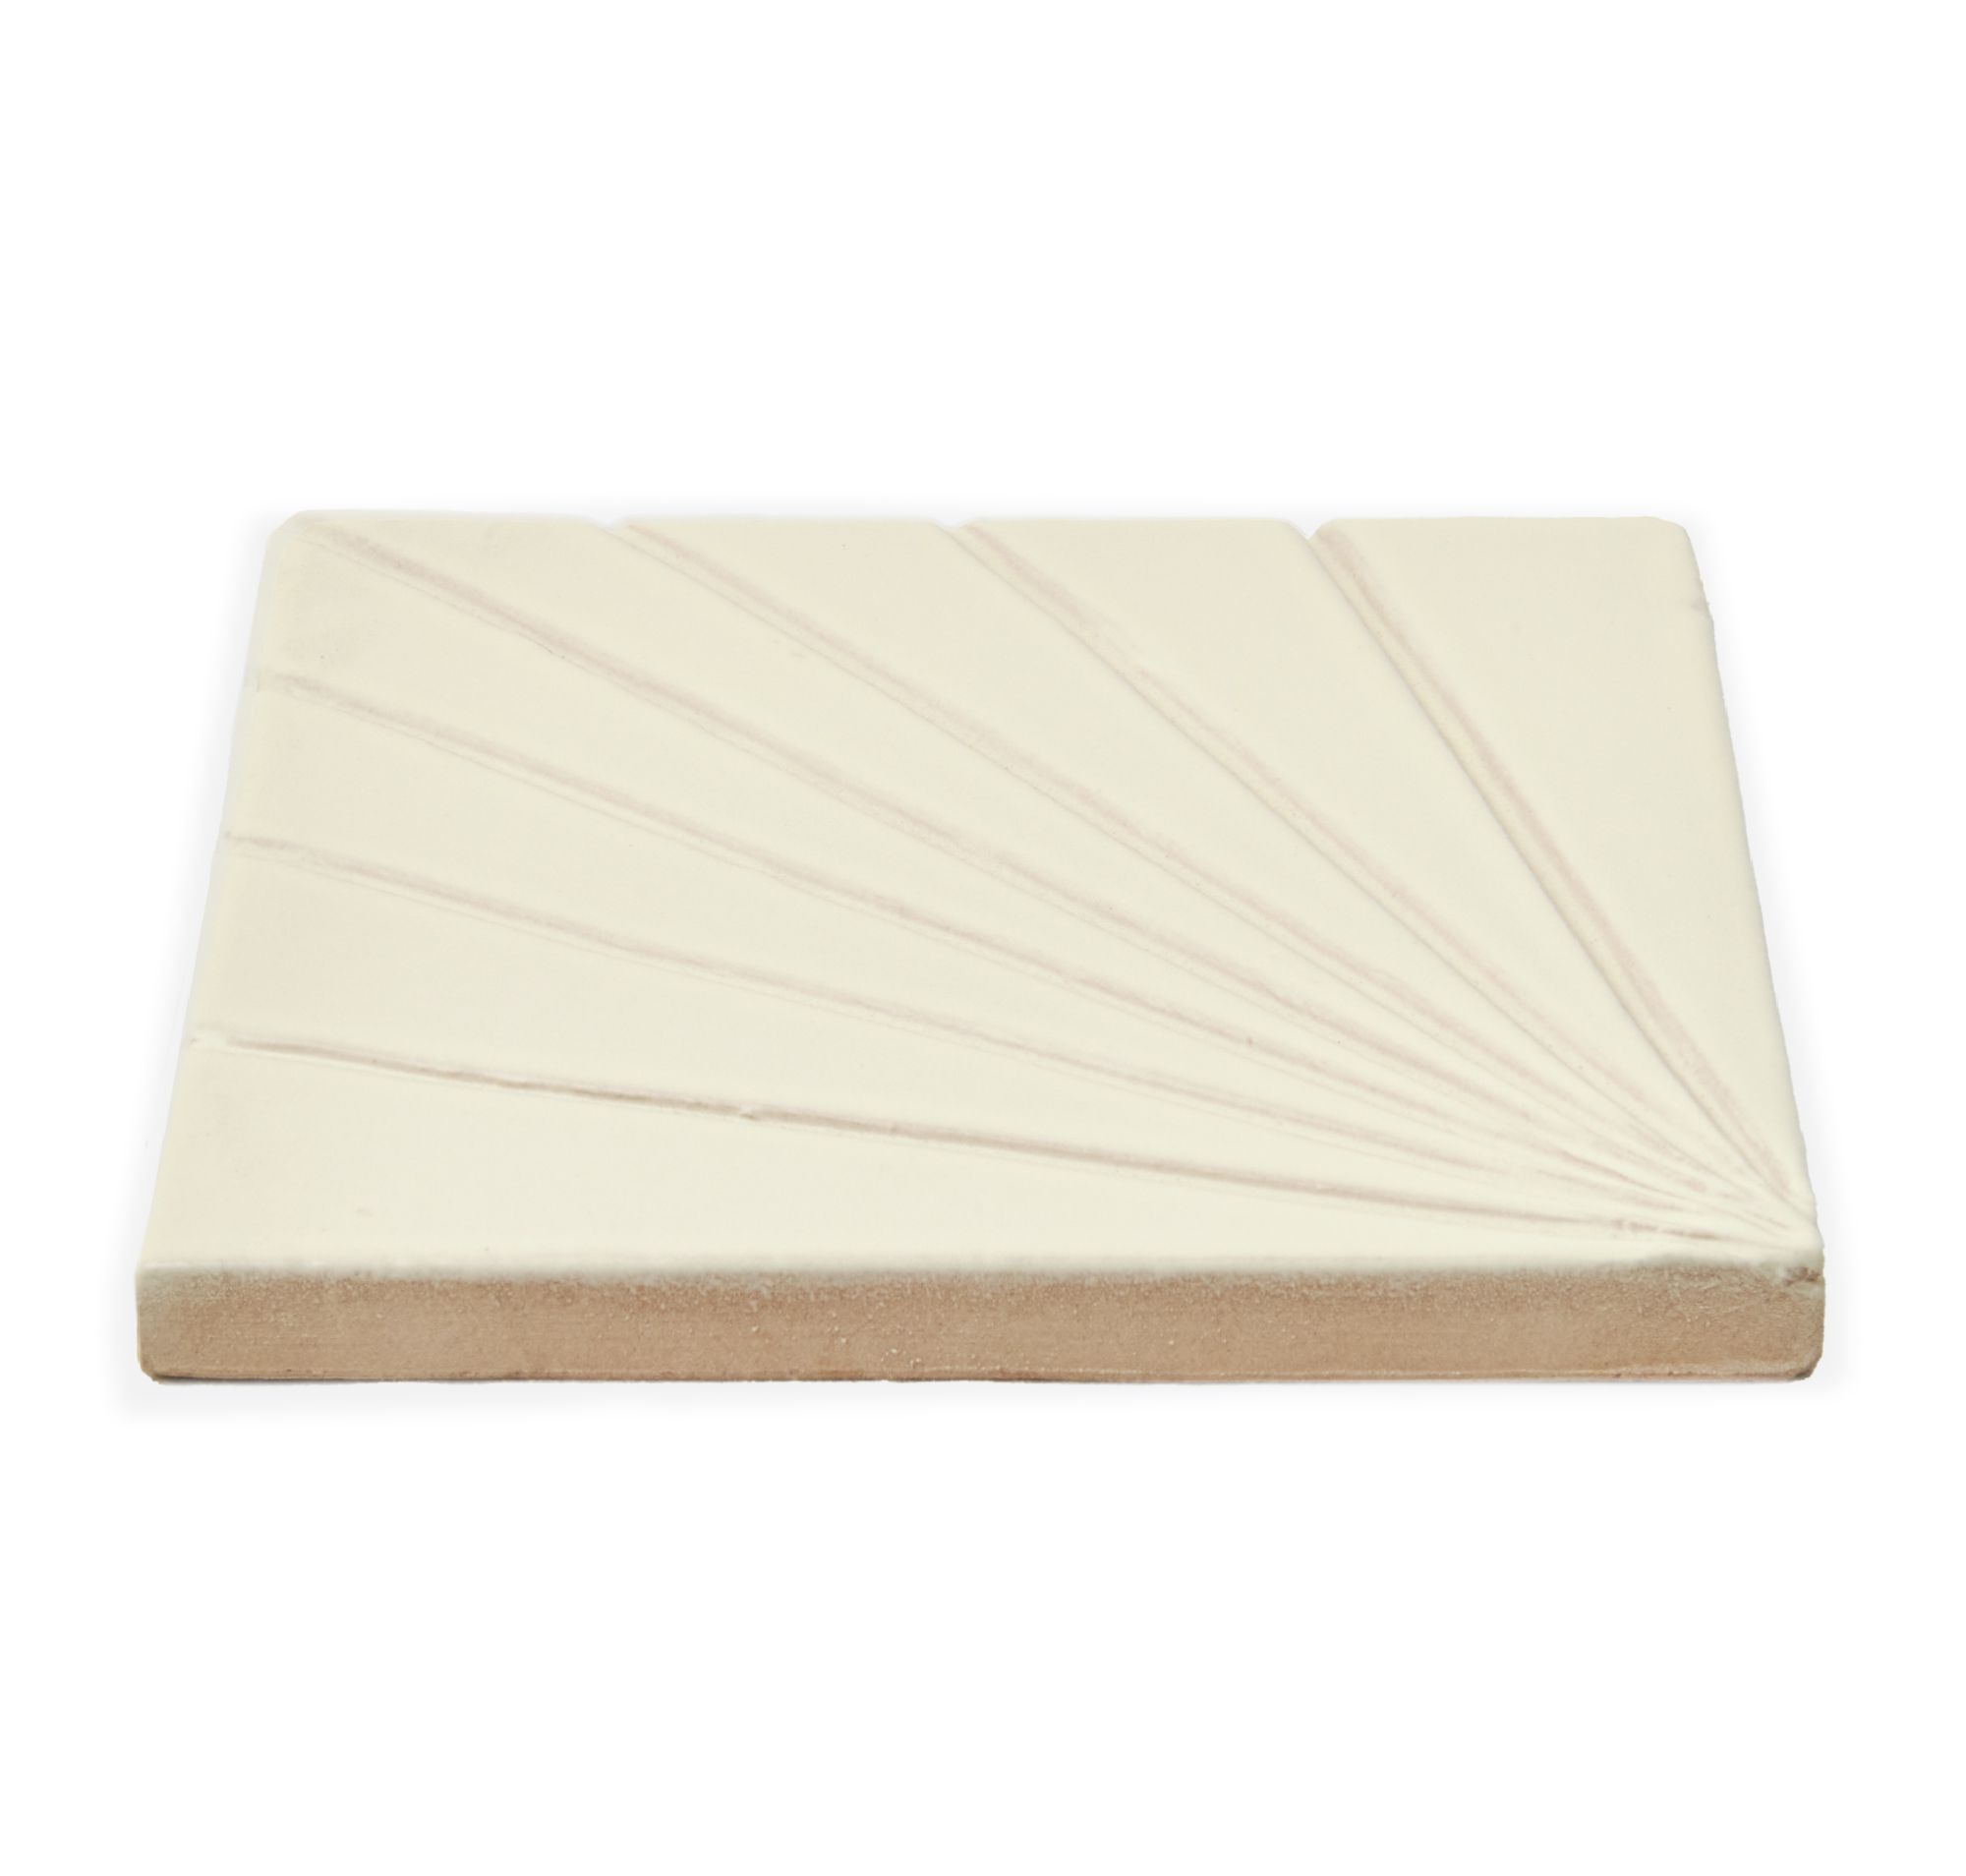 Tulum Bone 6x6 - Dimensional Relief Artisan Ceramic Tile